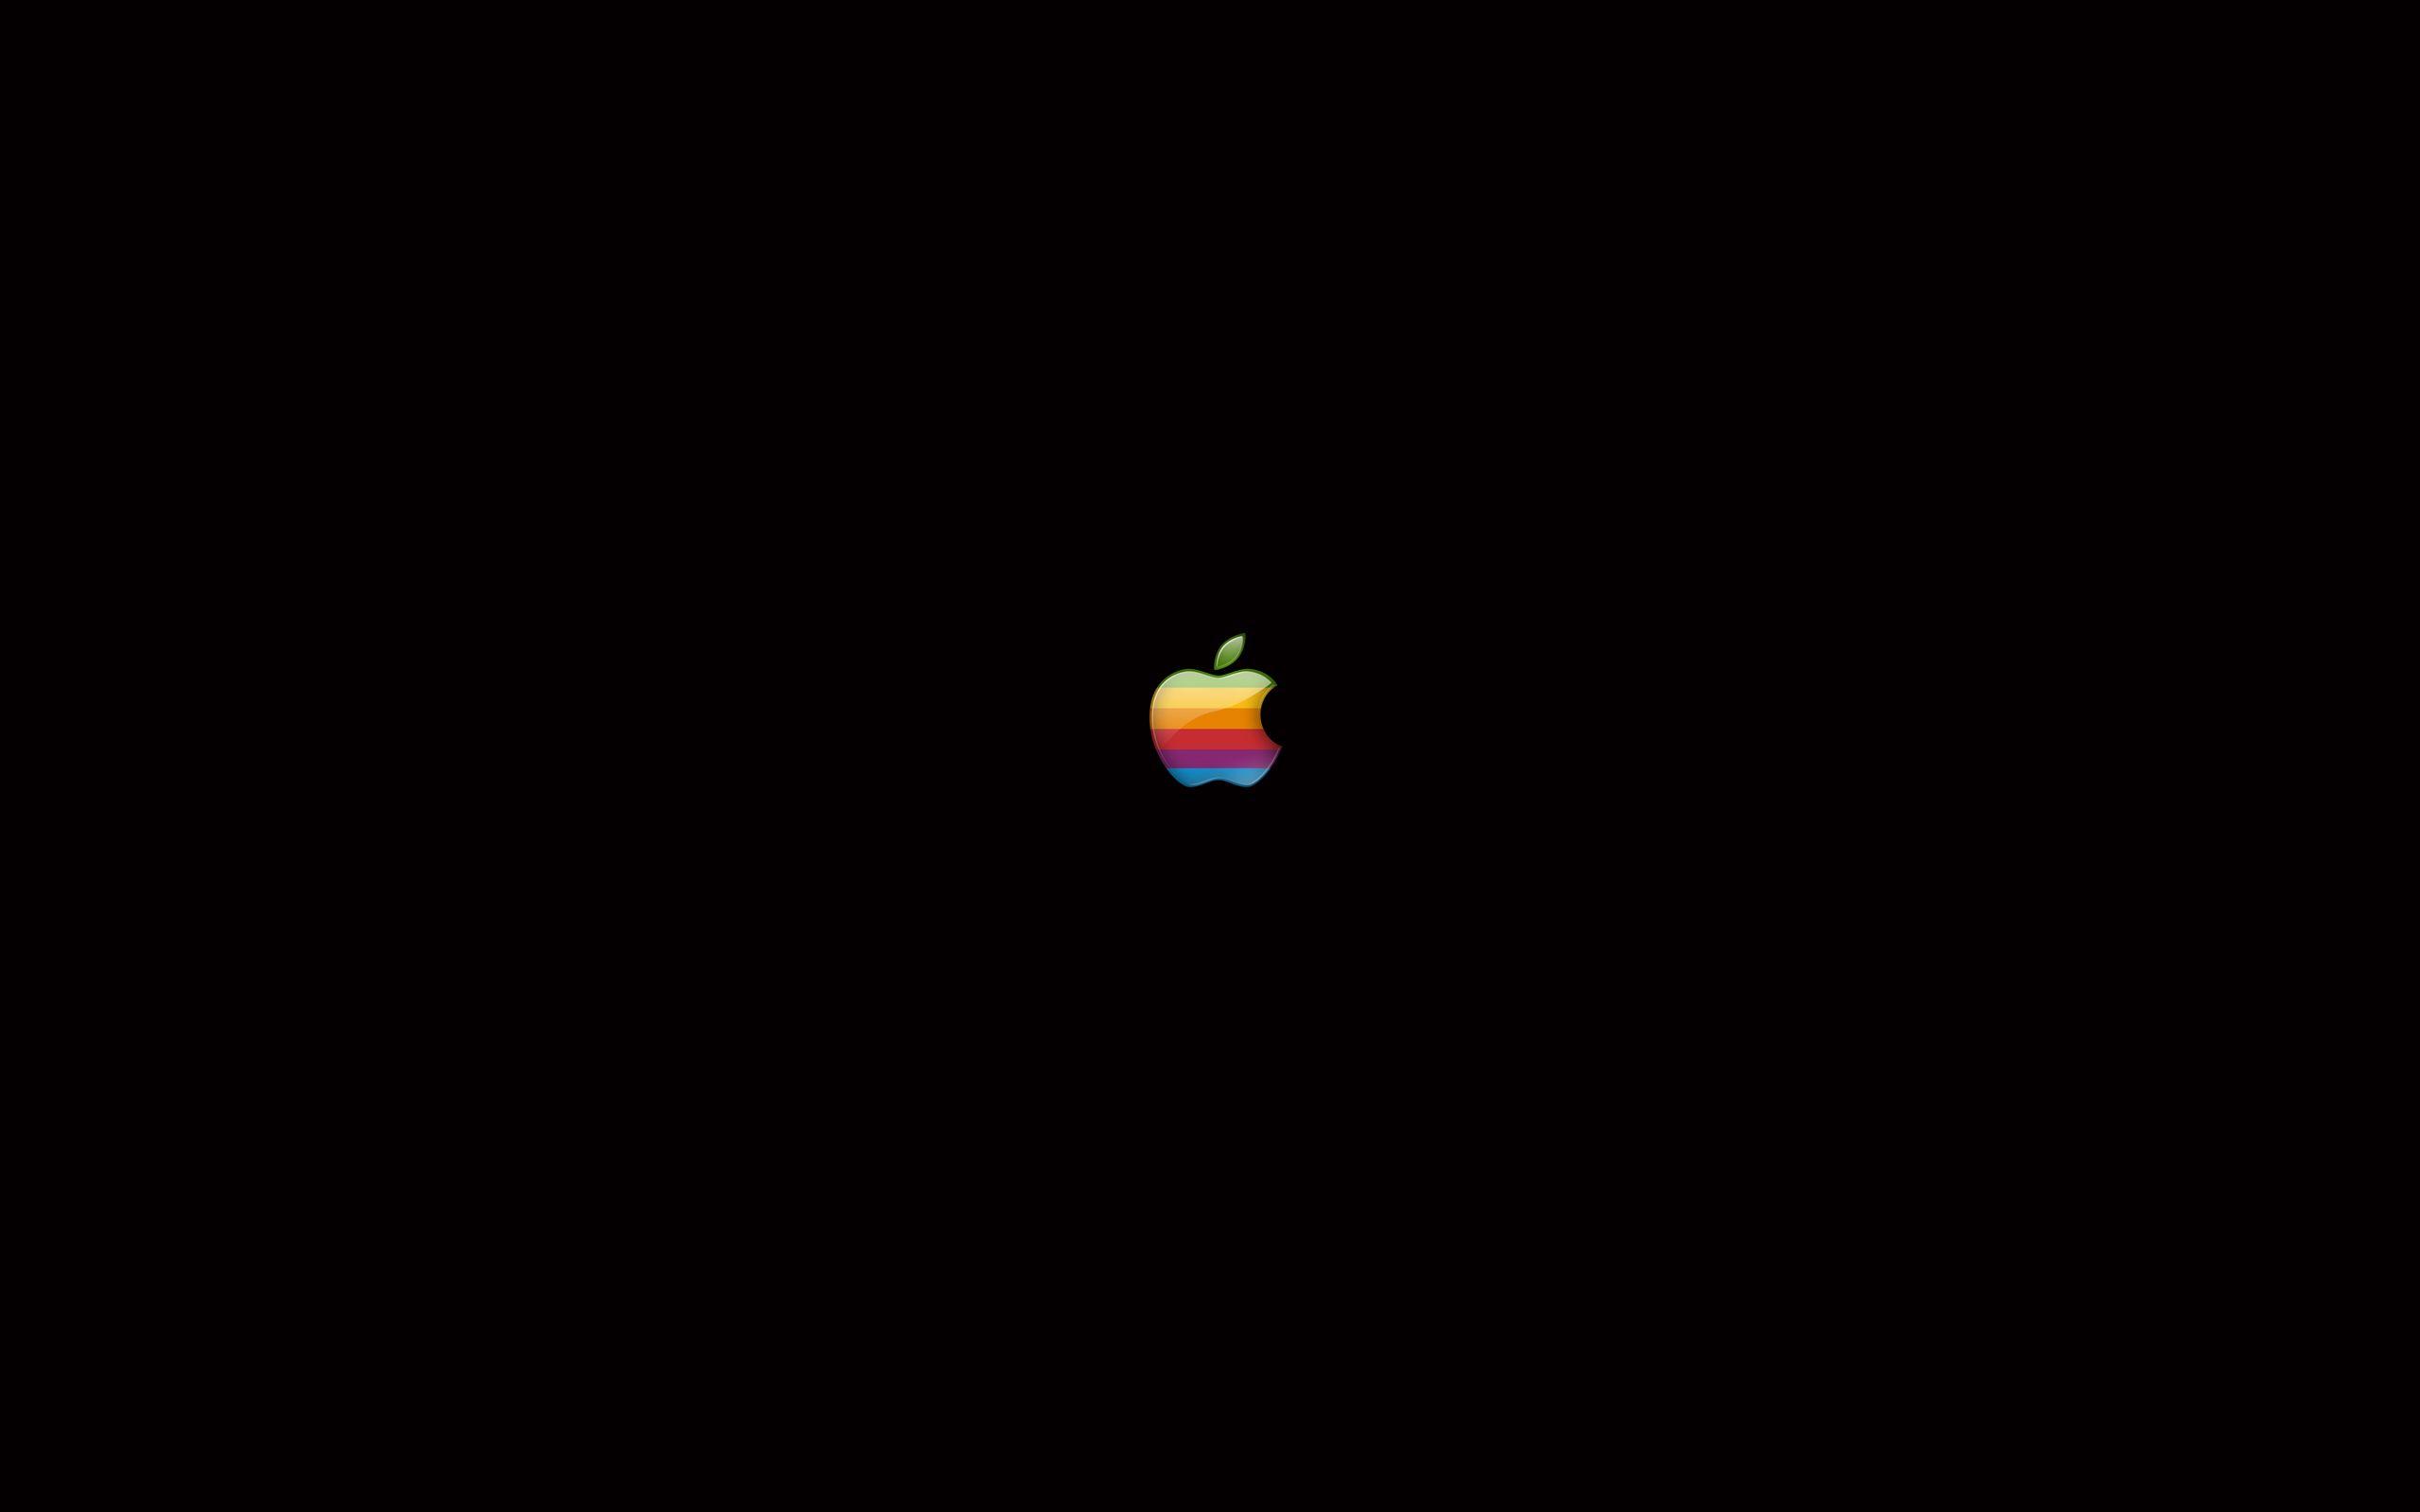 Apple Wallpaper For Mac, iPhone 7 and Desktop Screens